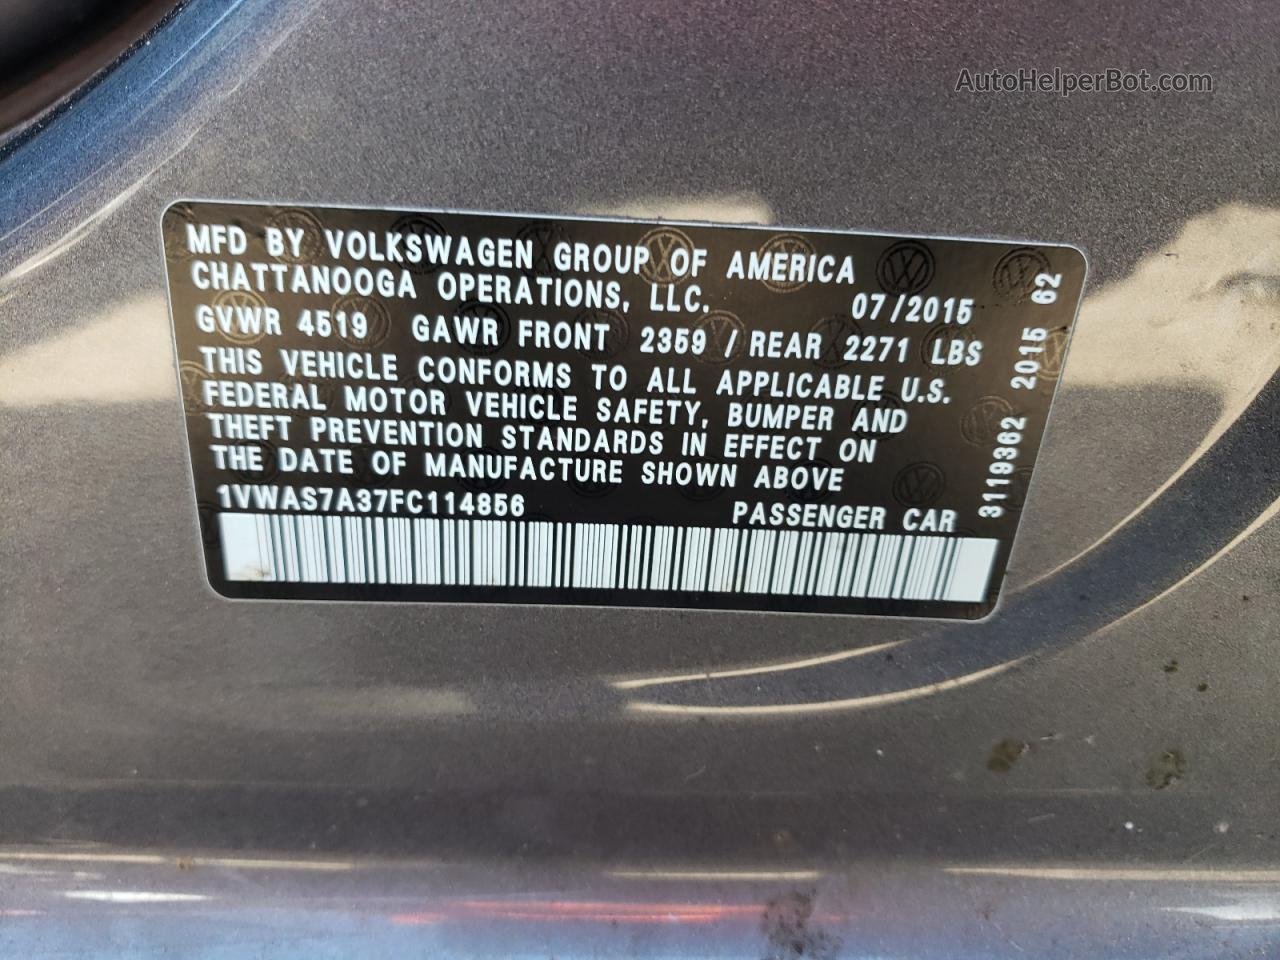 2015 Volkswagen Passat S Gray vin: 1VWAS7A37FC114856